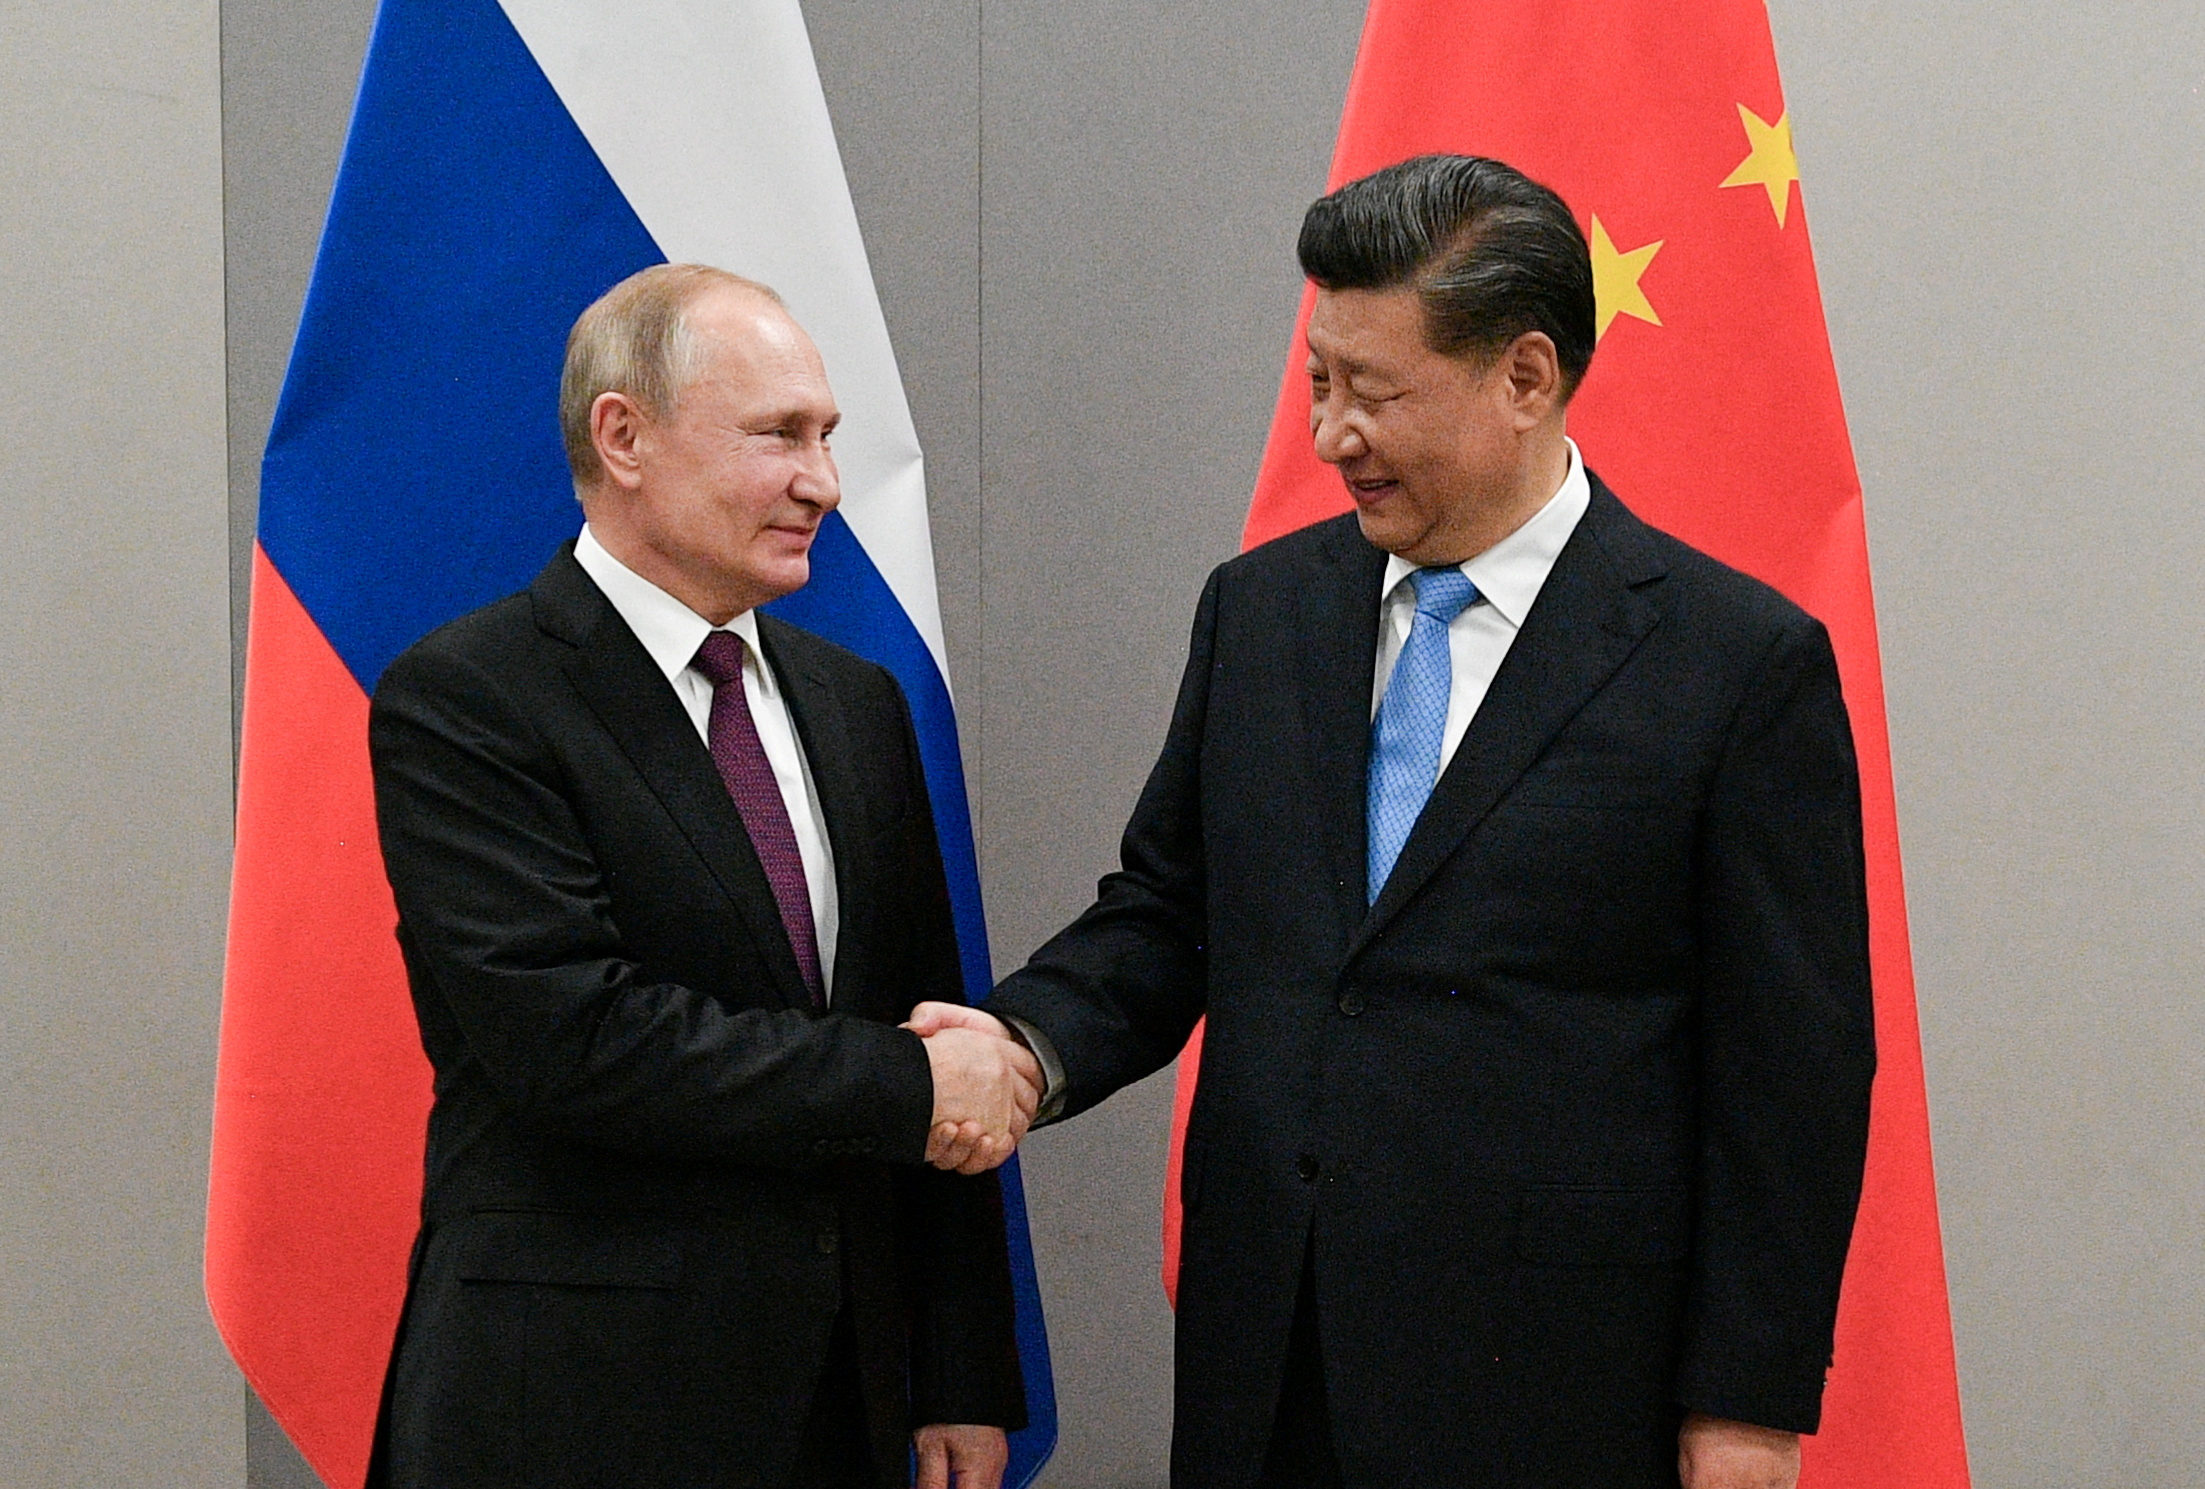 El presidente ruso Vladimir Putin y su par chino Xi Jinping durante la cumbre de los BRICS en Brasila en 2019. XI, un aliado clave de Moscú, no condenó la invasión rusa a Ucrania (Sputnik/Ramil Sitdikov/Kremlin via REUTERS)